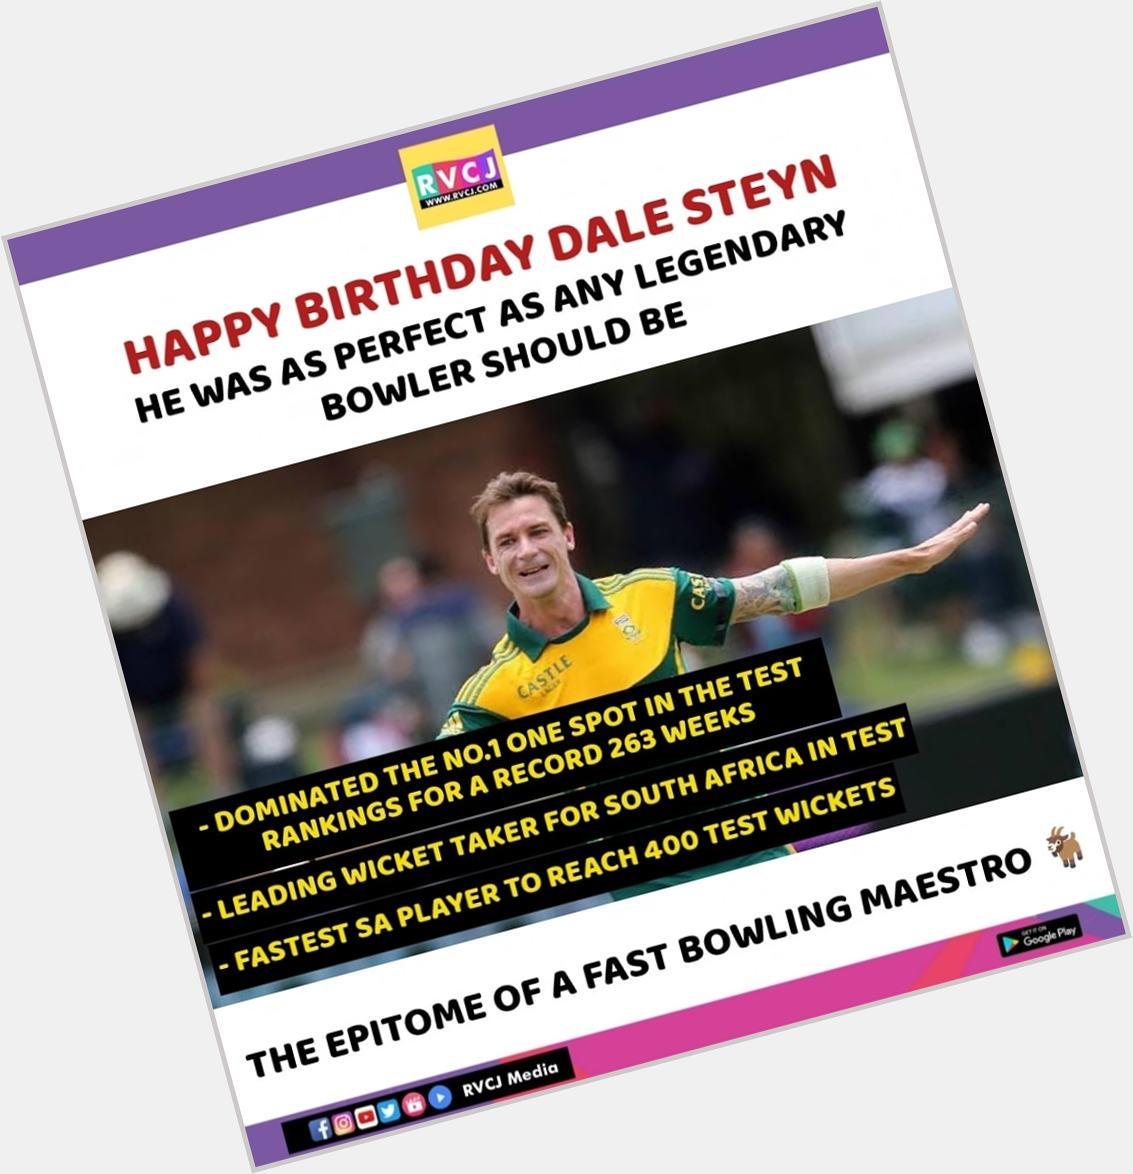 Happy Birthday Dale Steyn    